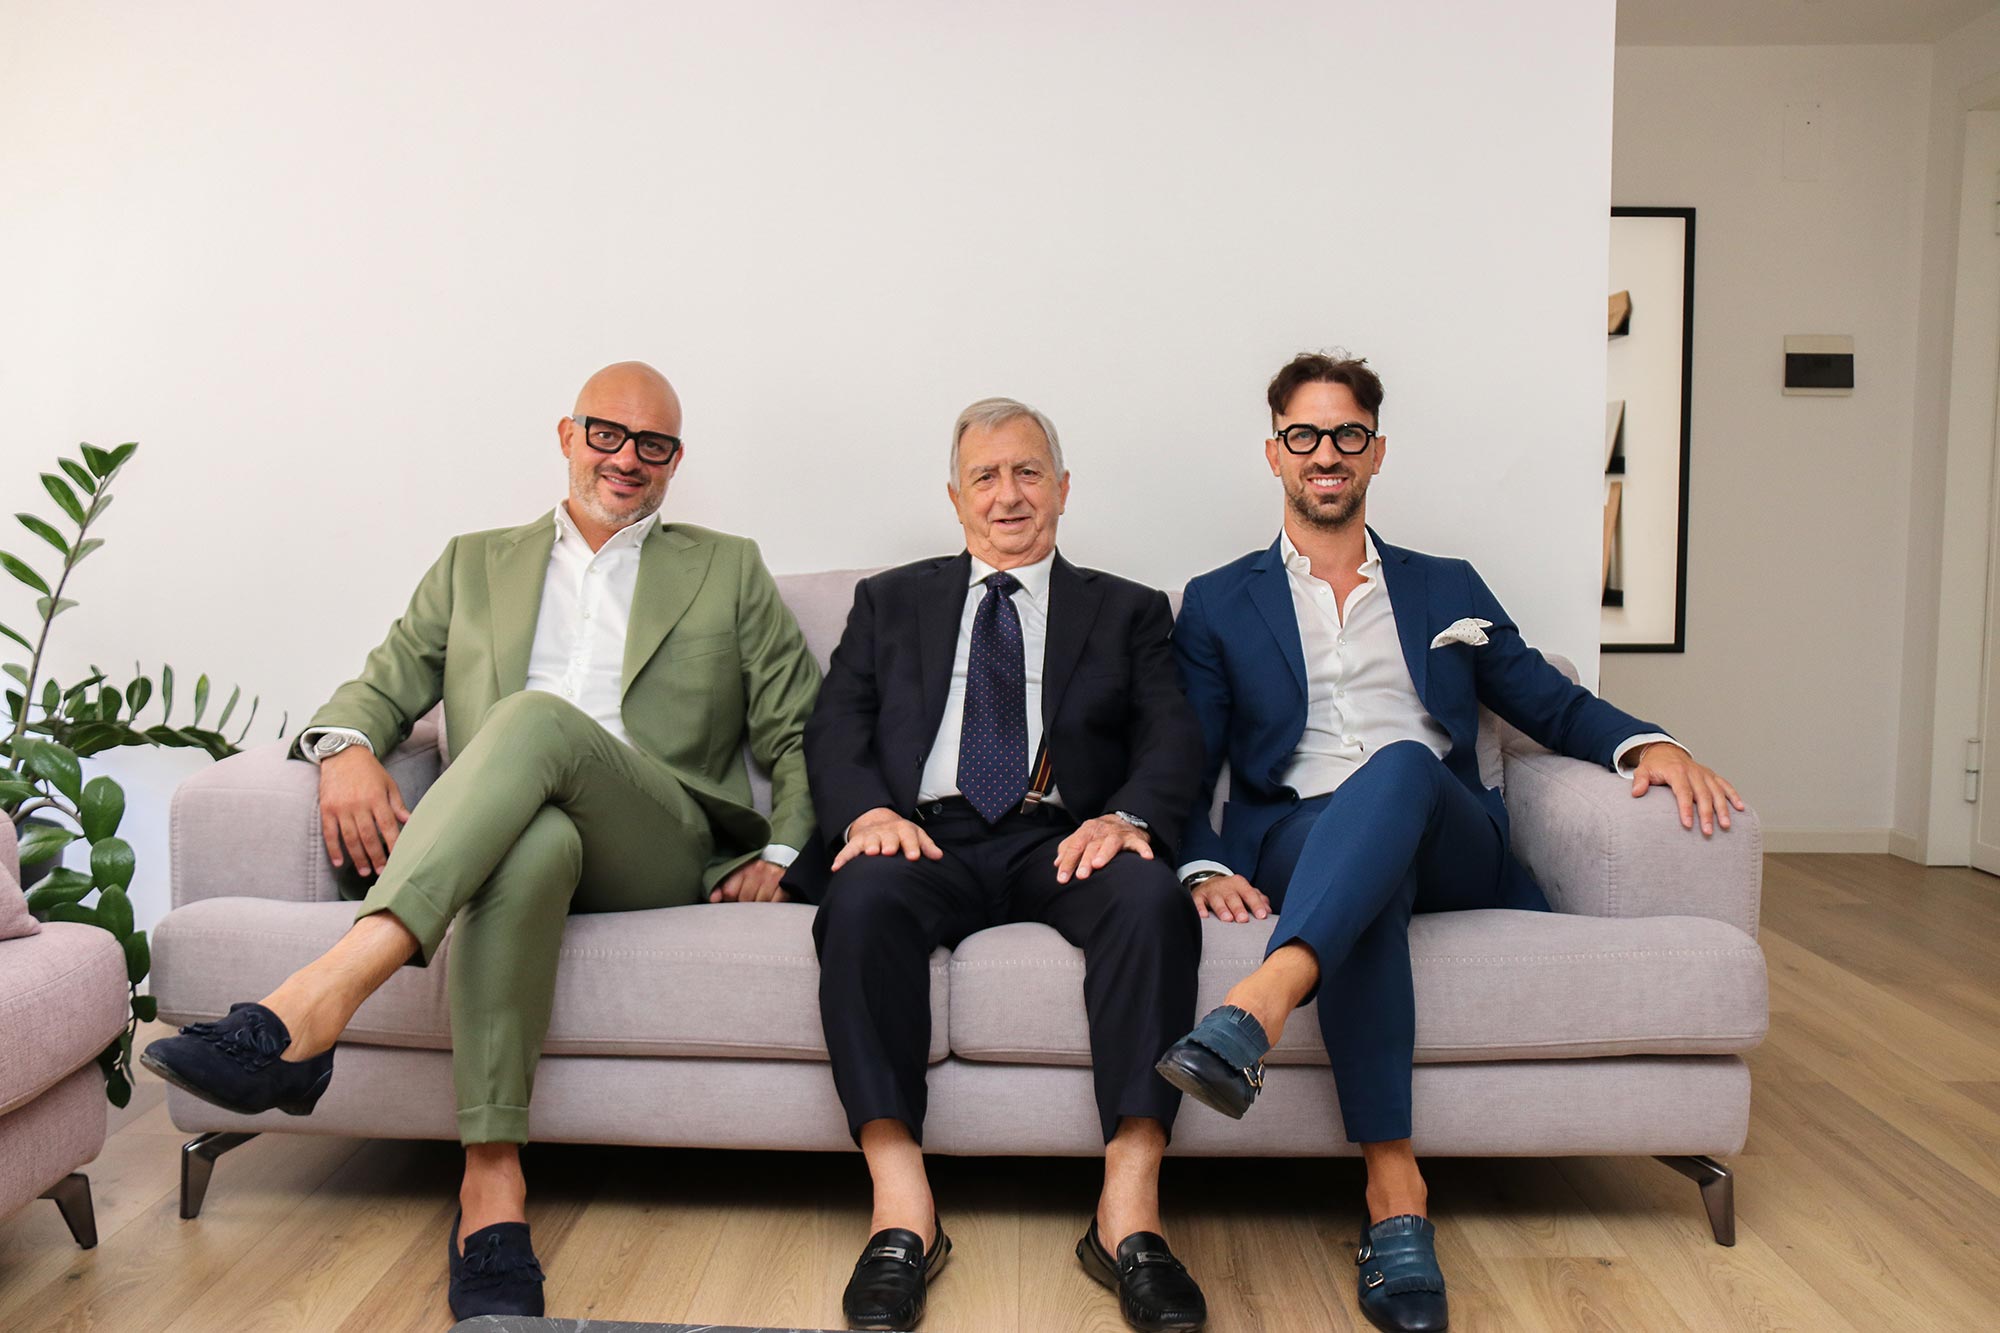 Il fondatore Umberto Pizzuto con i figli Lorenzo e Saverio, insieme gestiscono l'agenzia Pizzuto Rappresentanze.